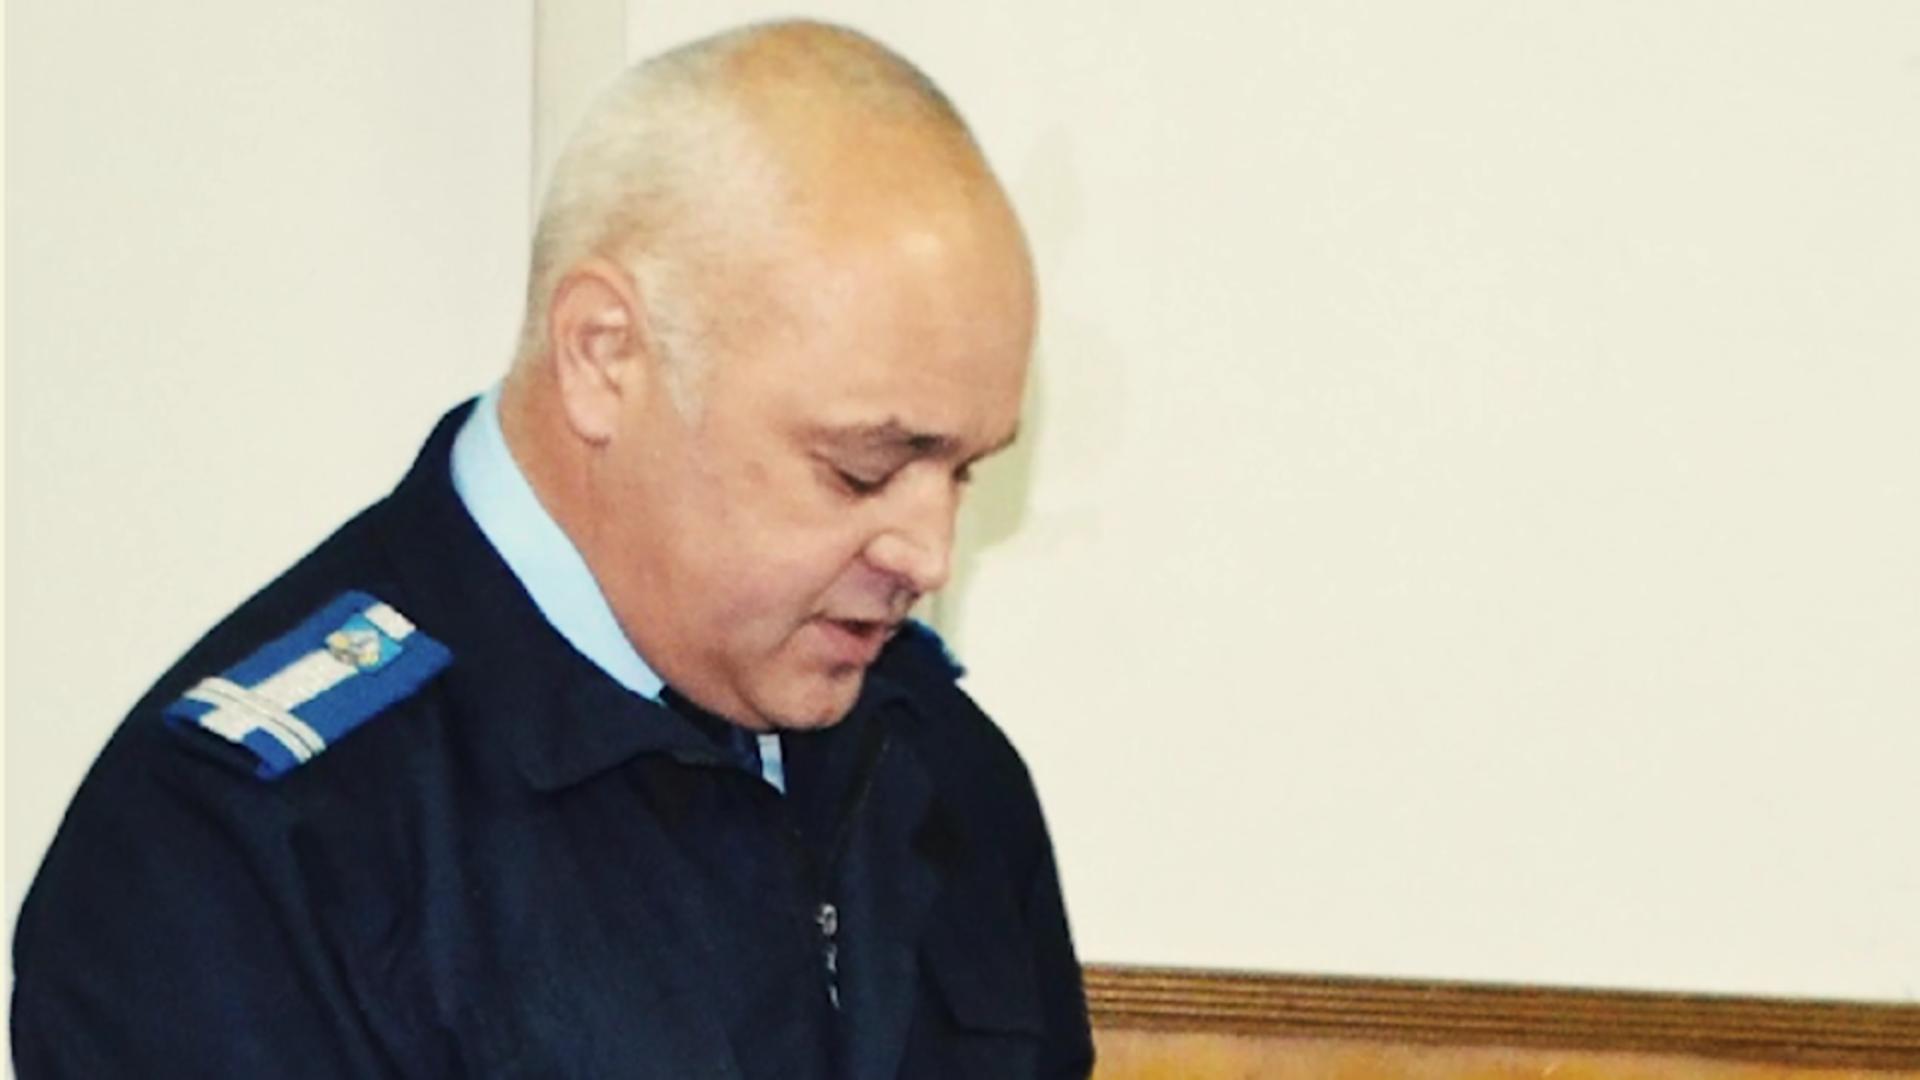 Fostul șef al Jandarmeriei Maramureș, colonelul Marcel Florișteanu